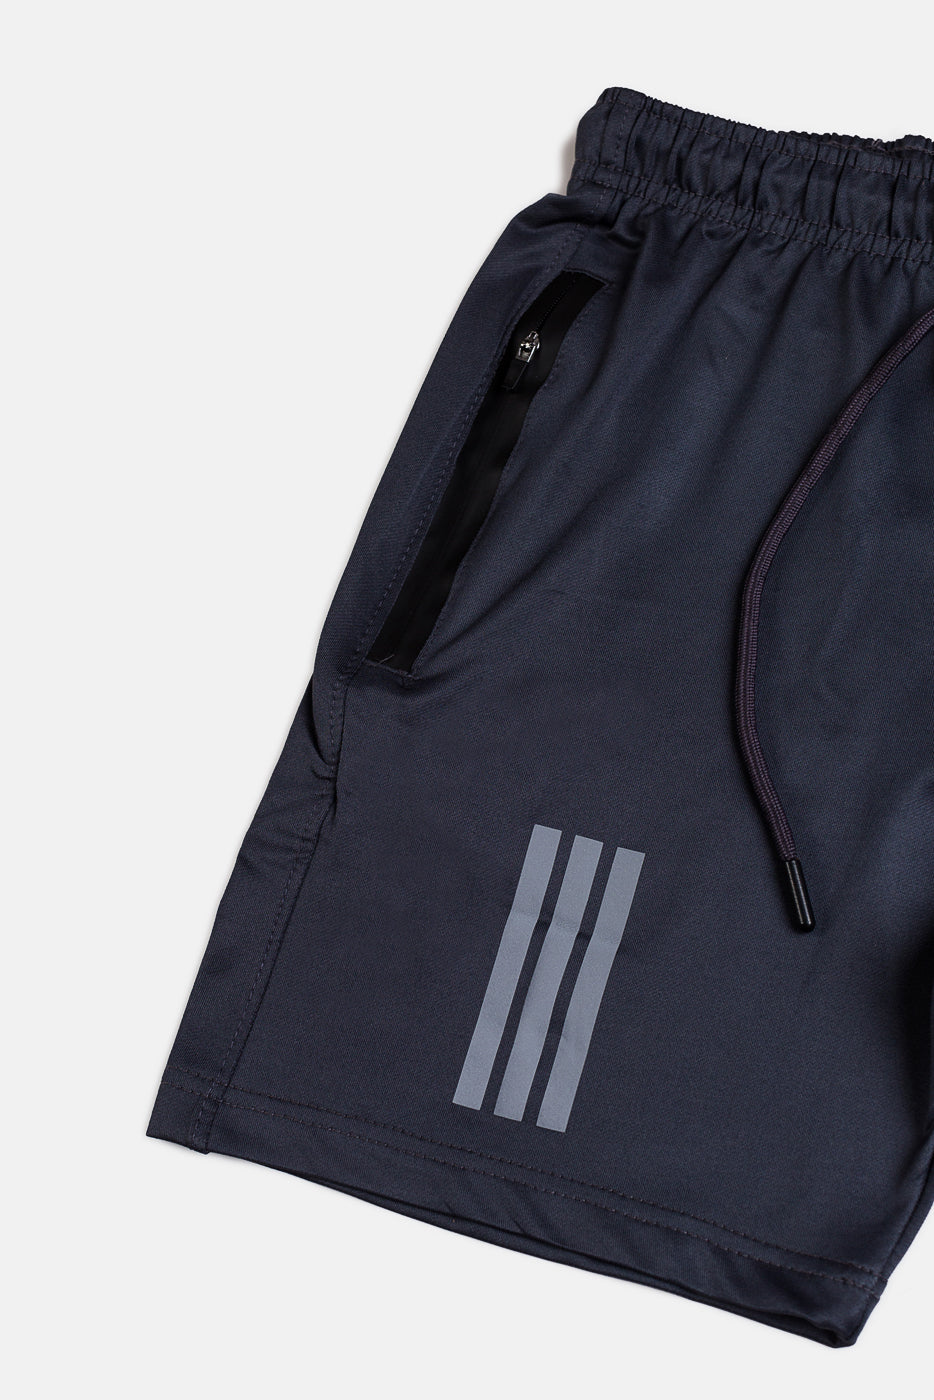 ADDAS Dri Fit Premium 3 Stripes Shorts –  Dark Grey